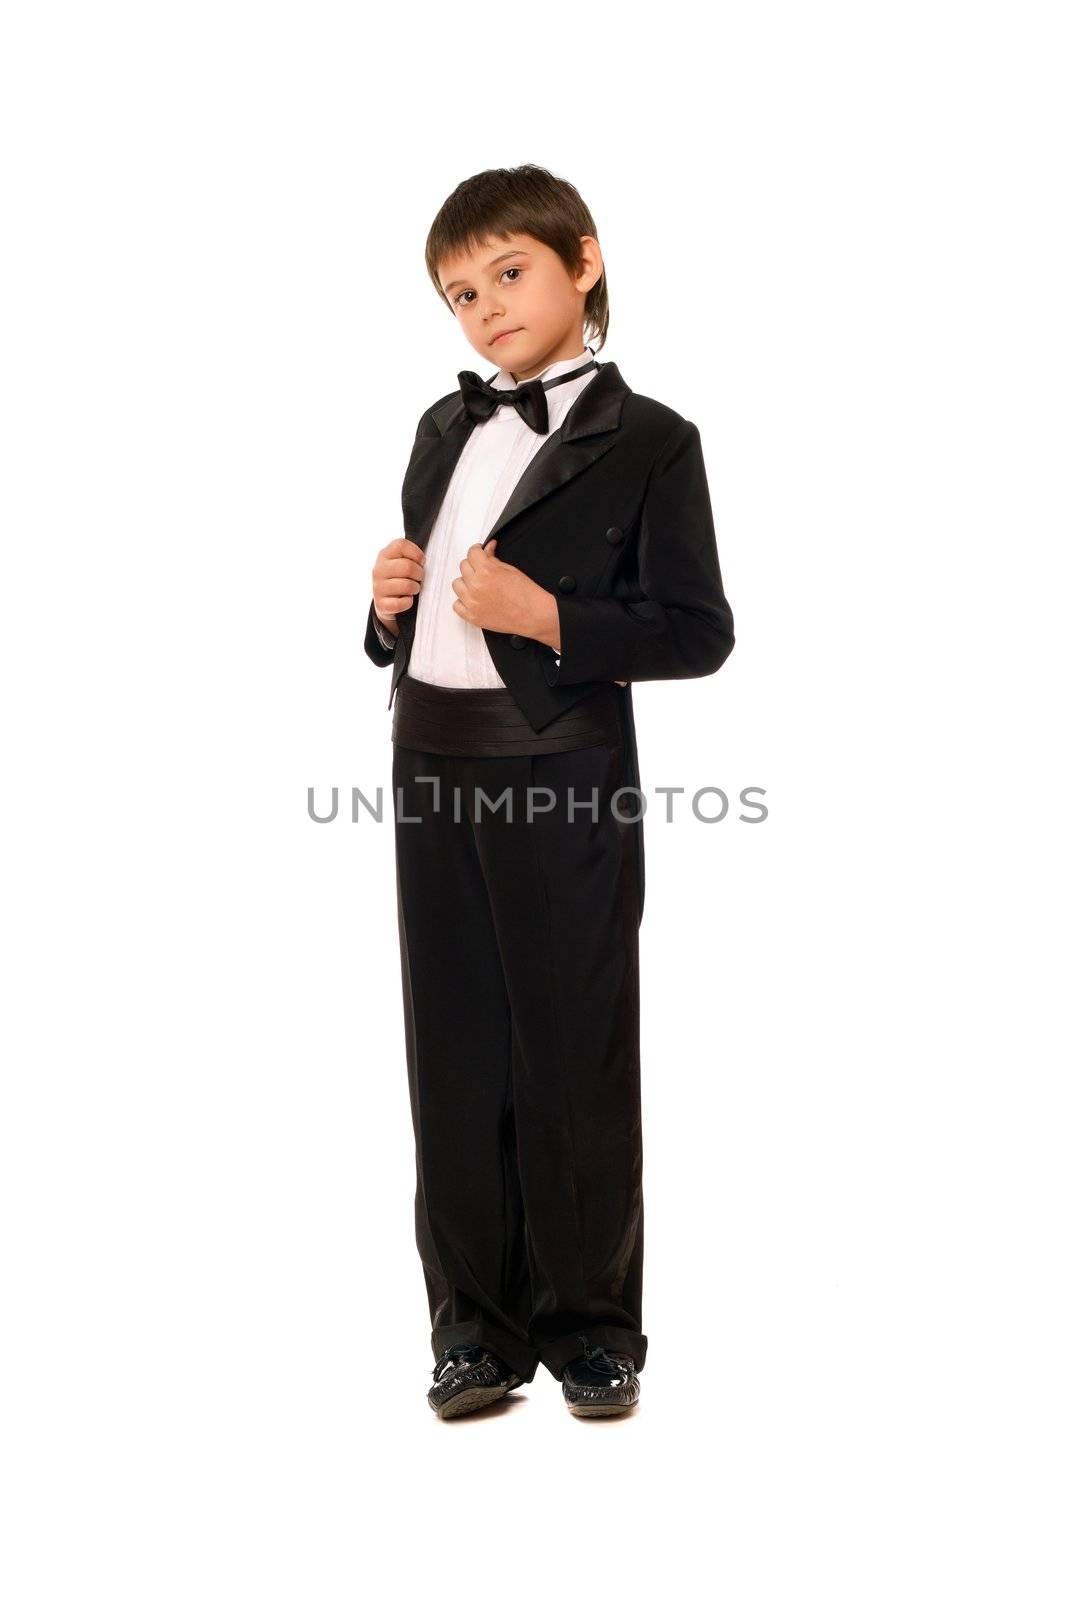 Little boy in a tuxedo by acidgrey